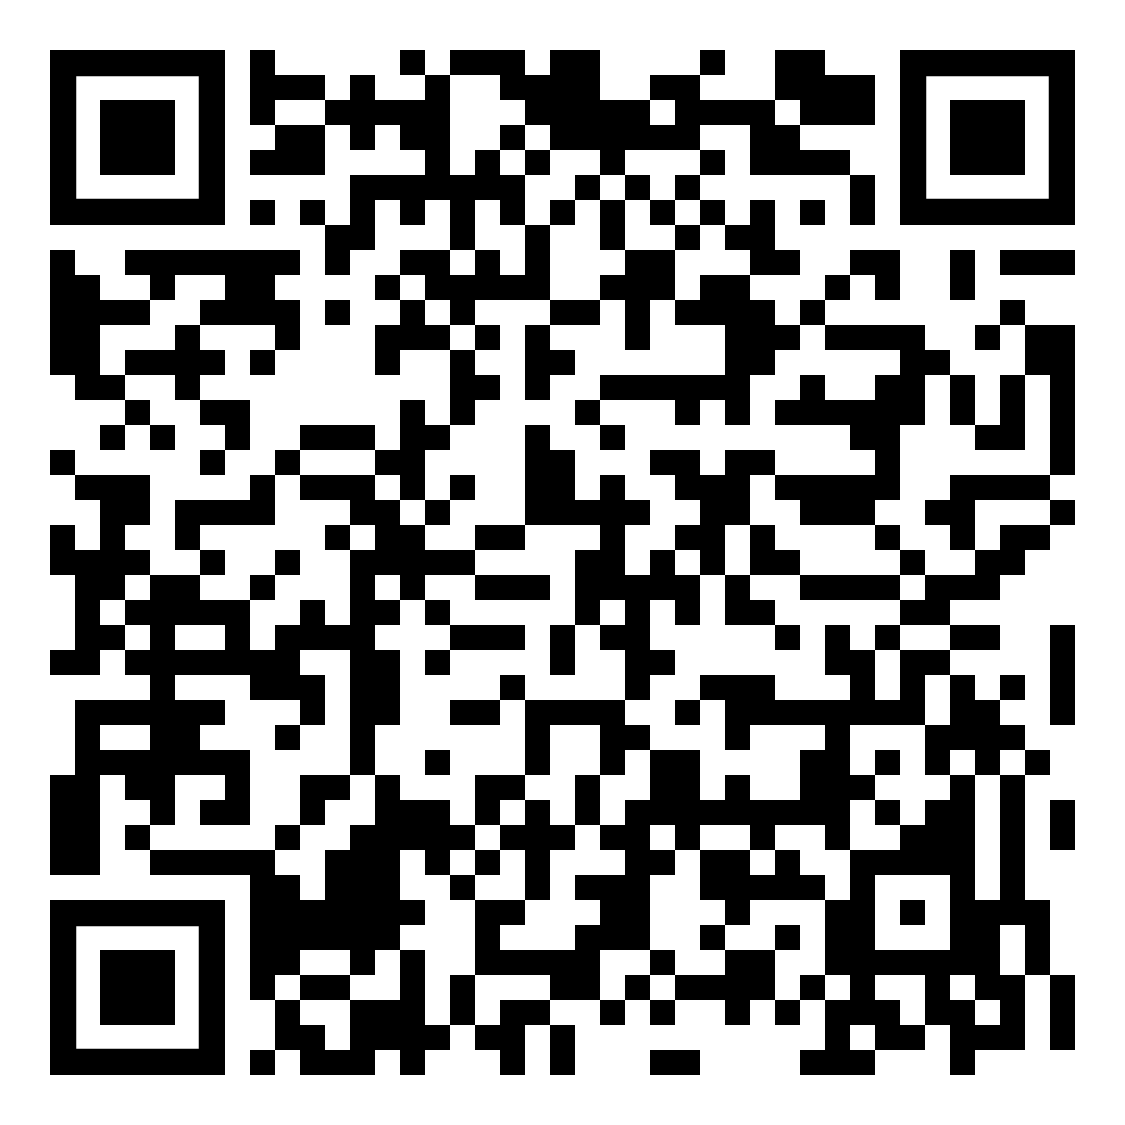 QR code for SC Mobile app download